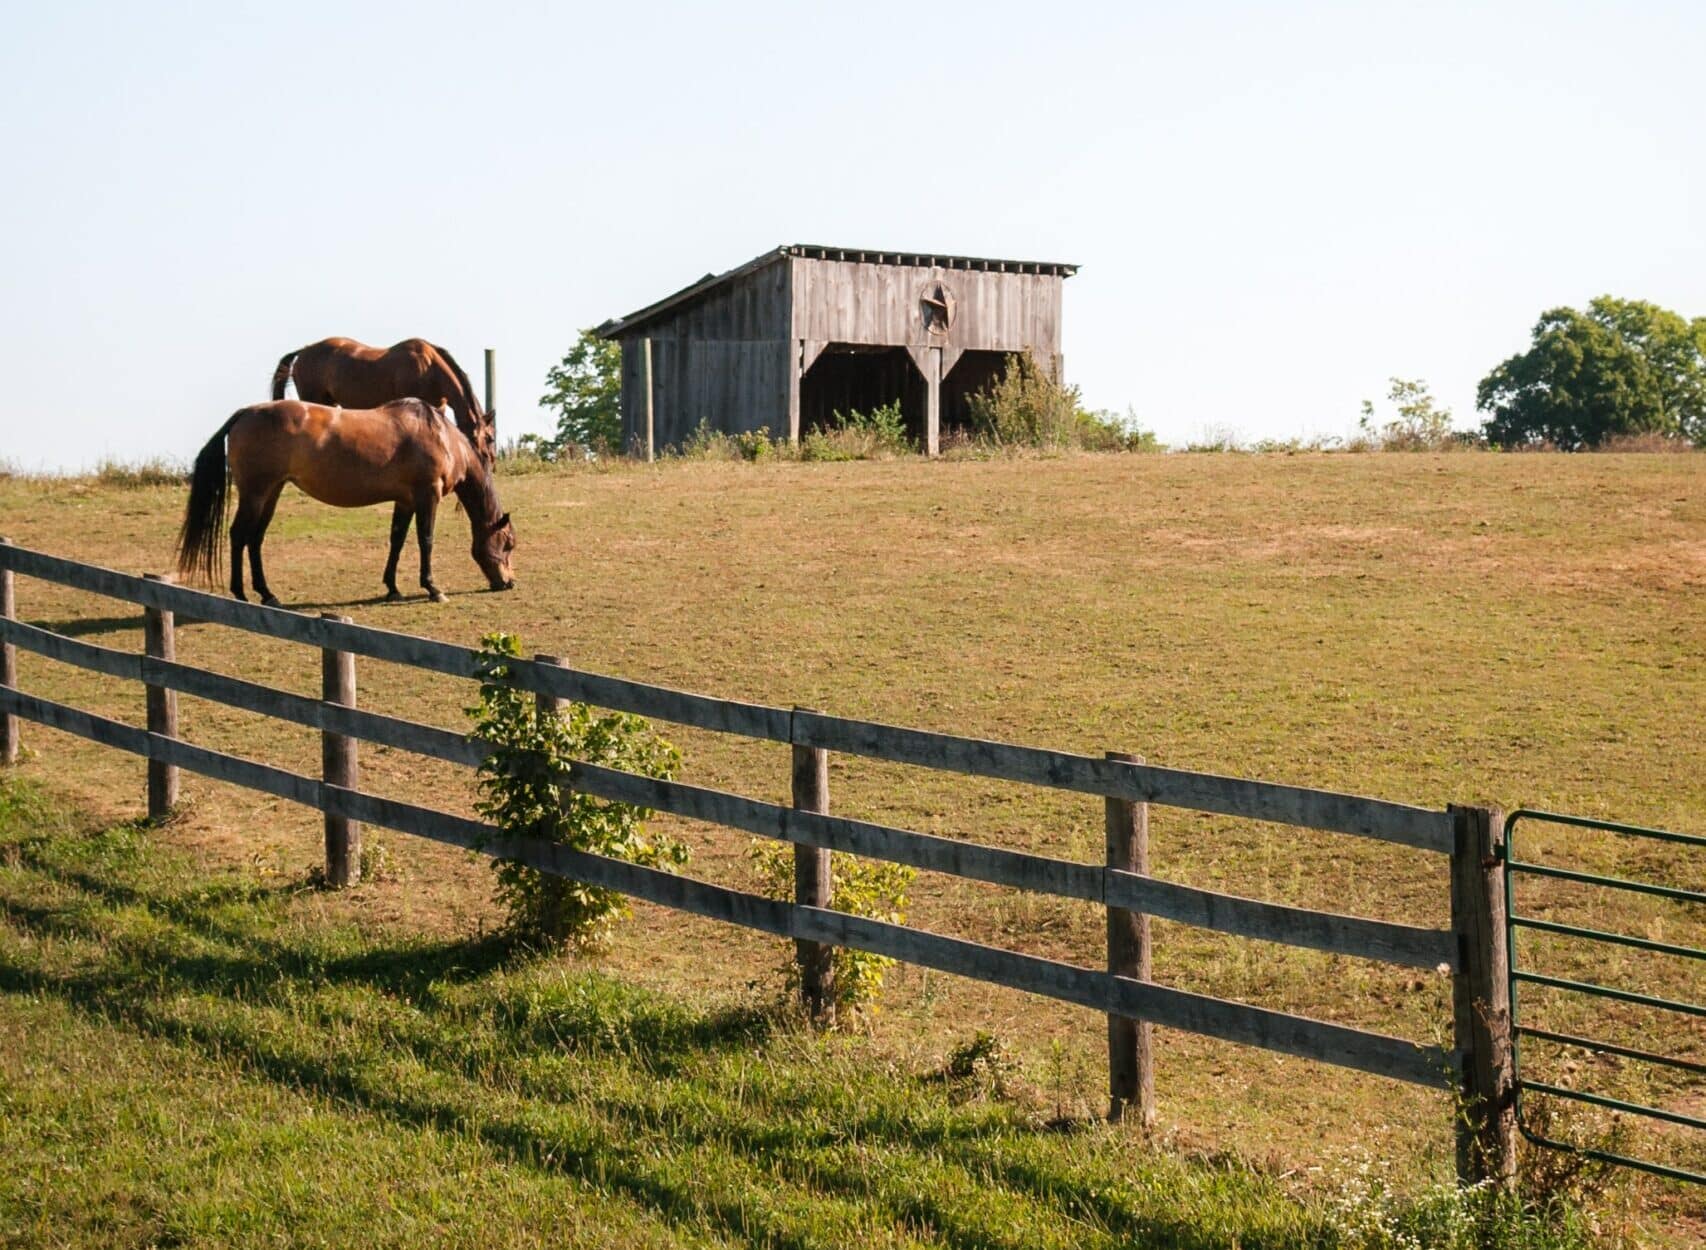 A horse in a field